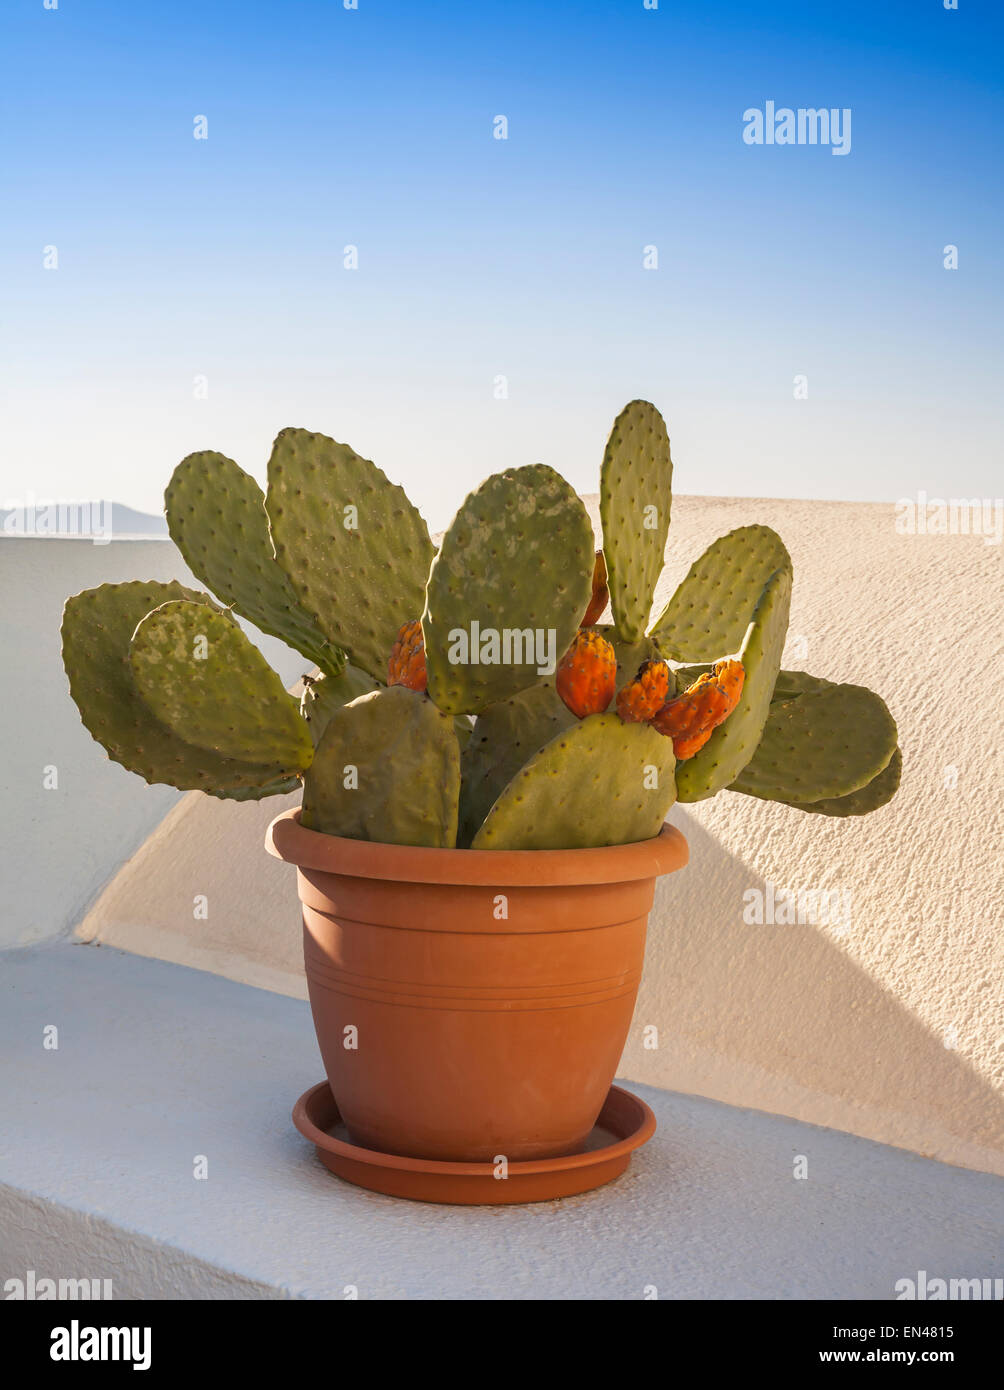 Petit cactus en pot dans un récipient en terre cuite sur une corniche. Banque D'Images